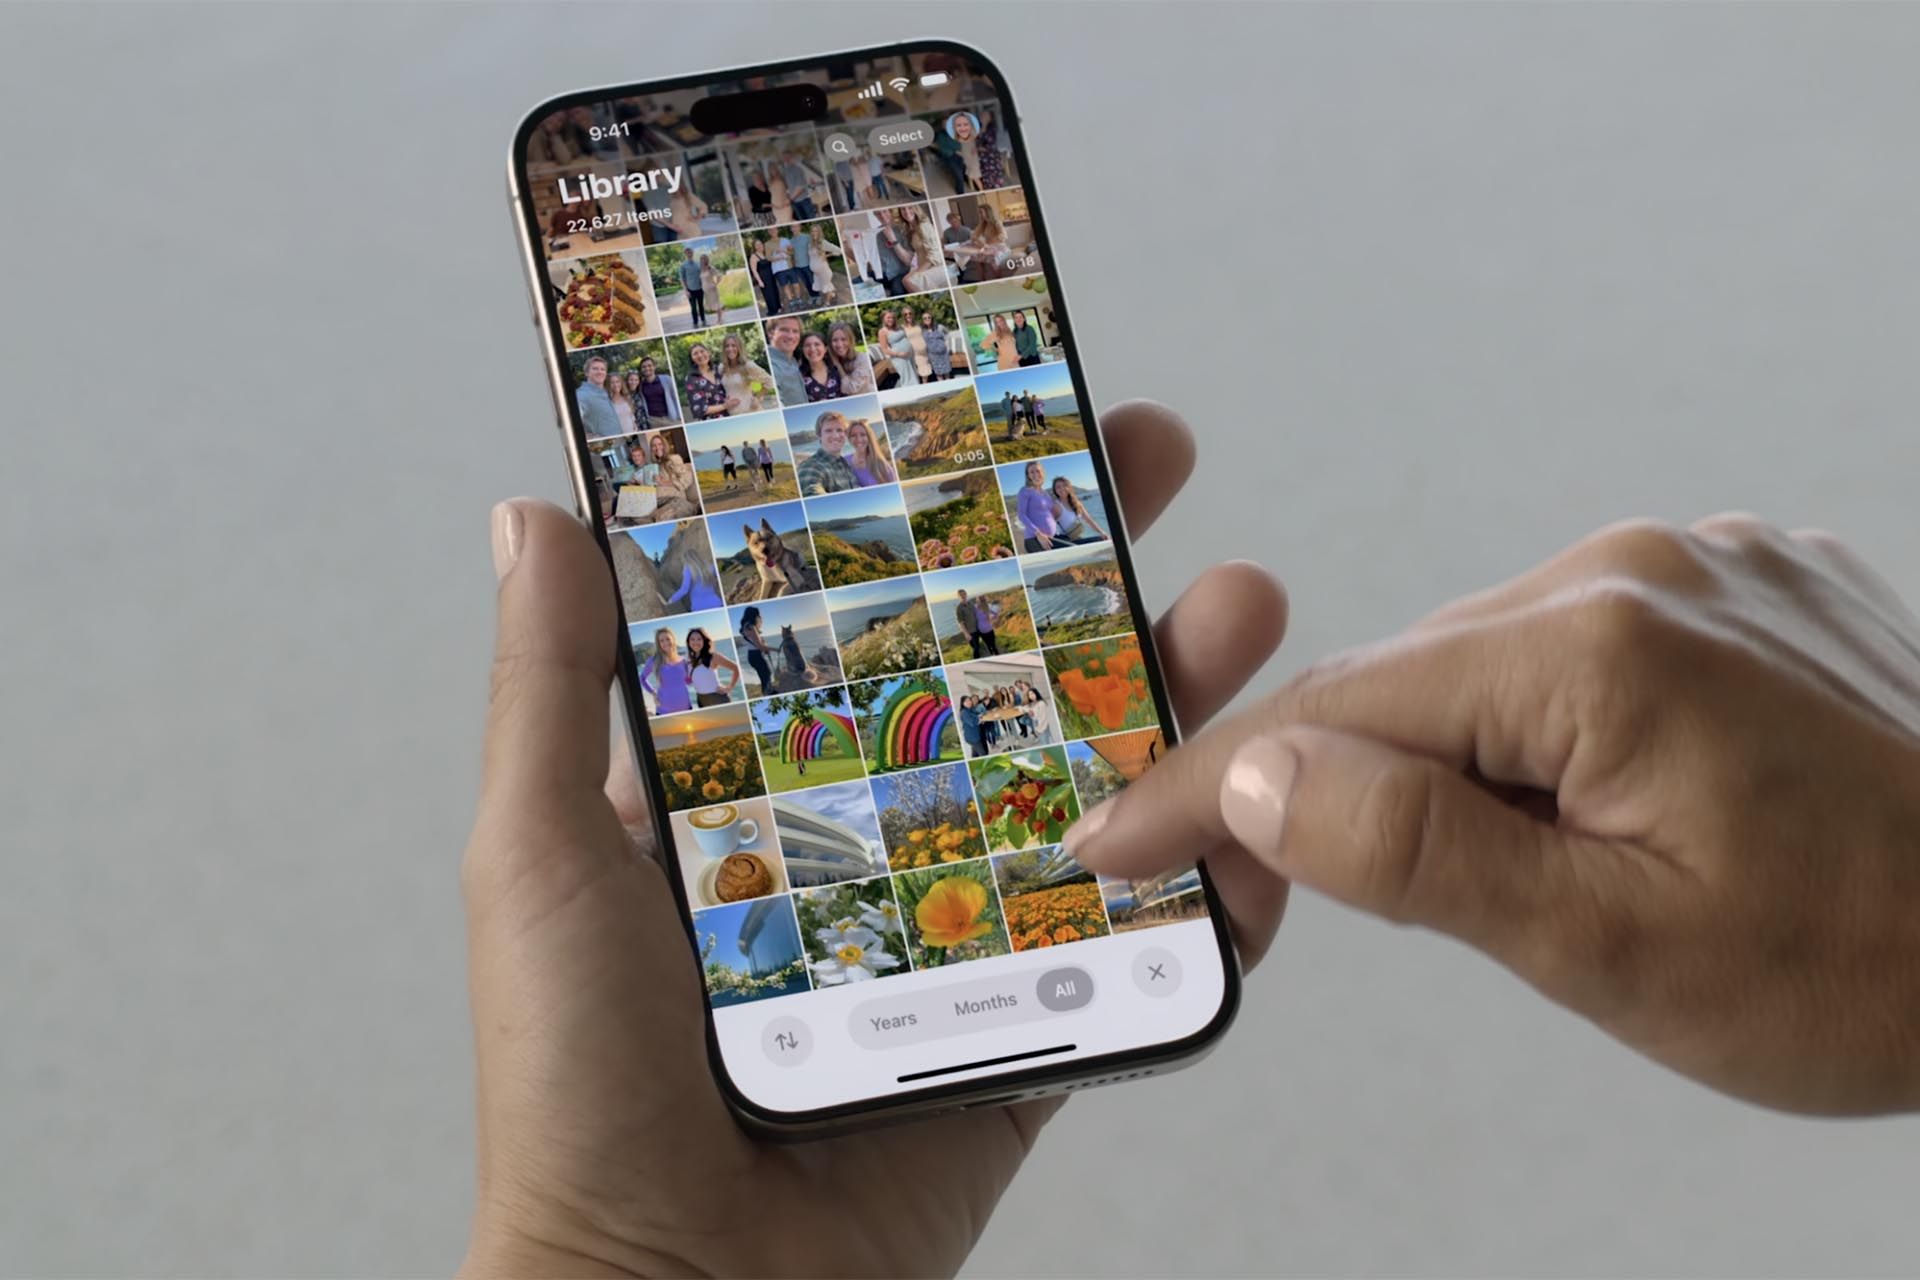 یک گوشی آيفون  با جدول تصاویر اپلیکیشن Photos - همراه با فیلتر ماه و سال در پایین صفحه در دست یک نفر